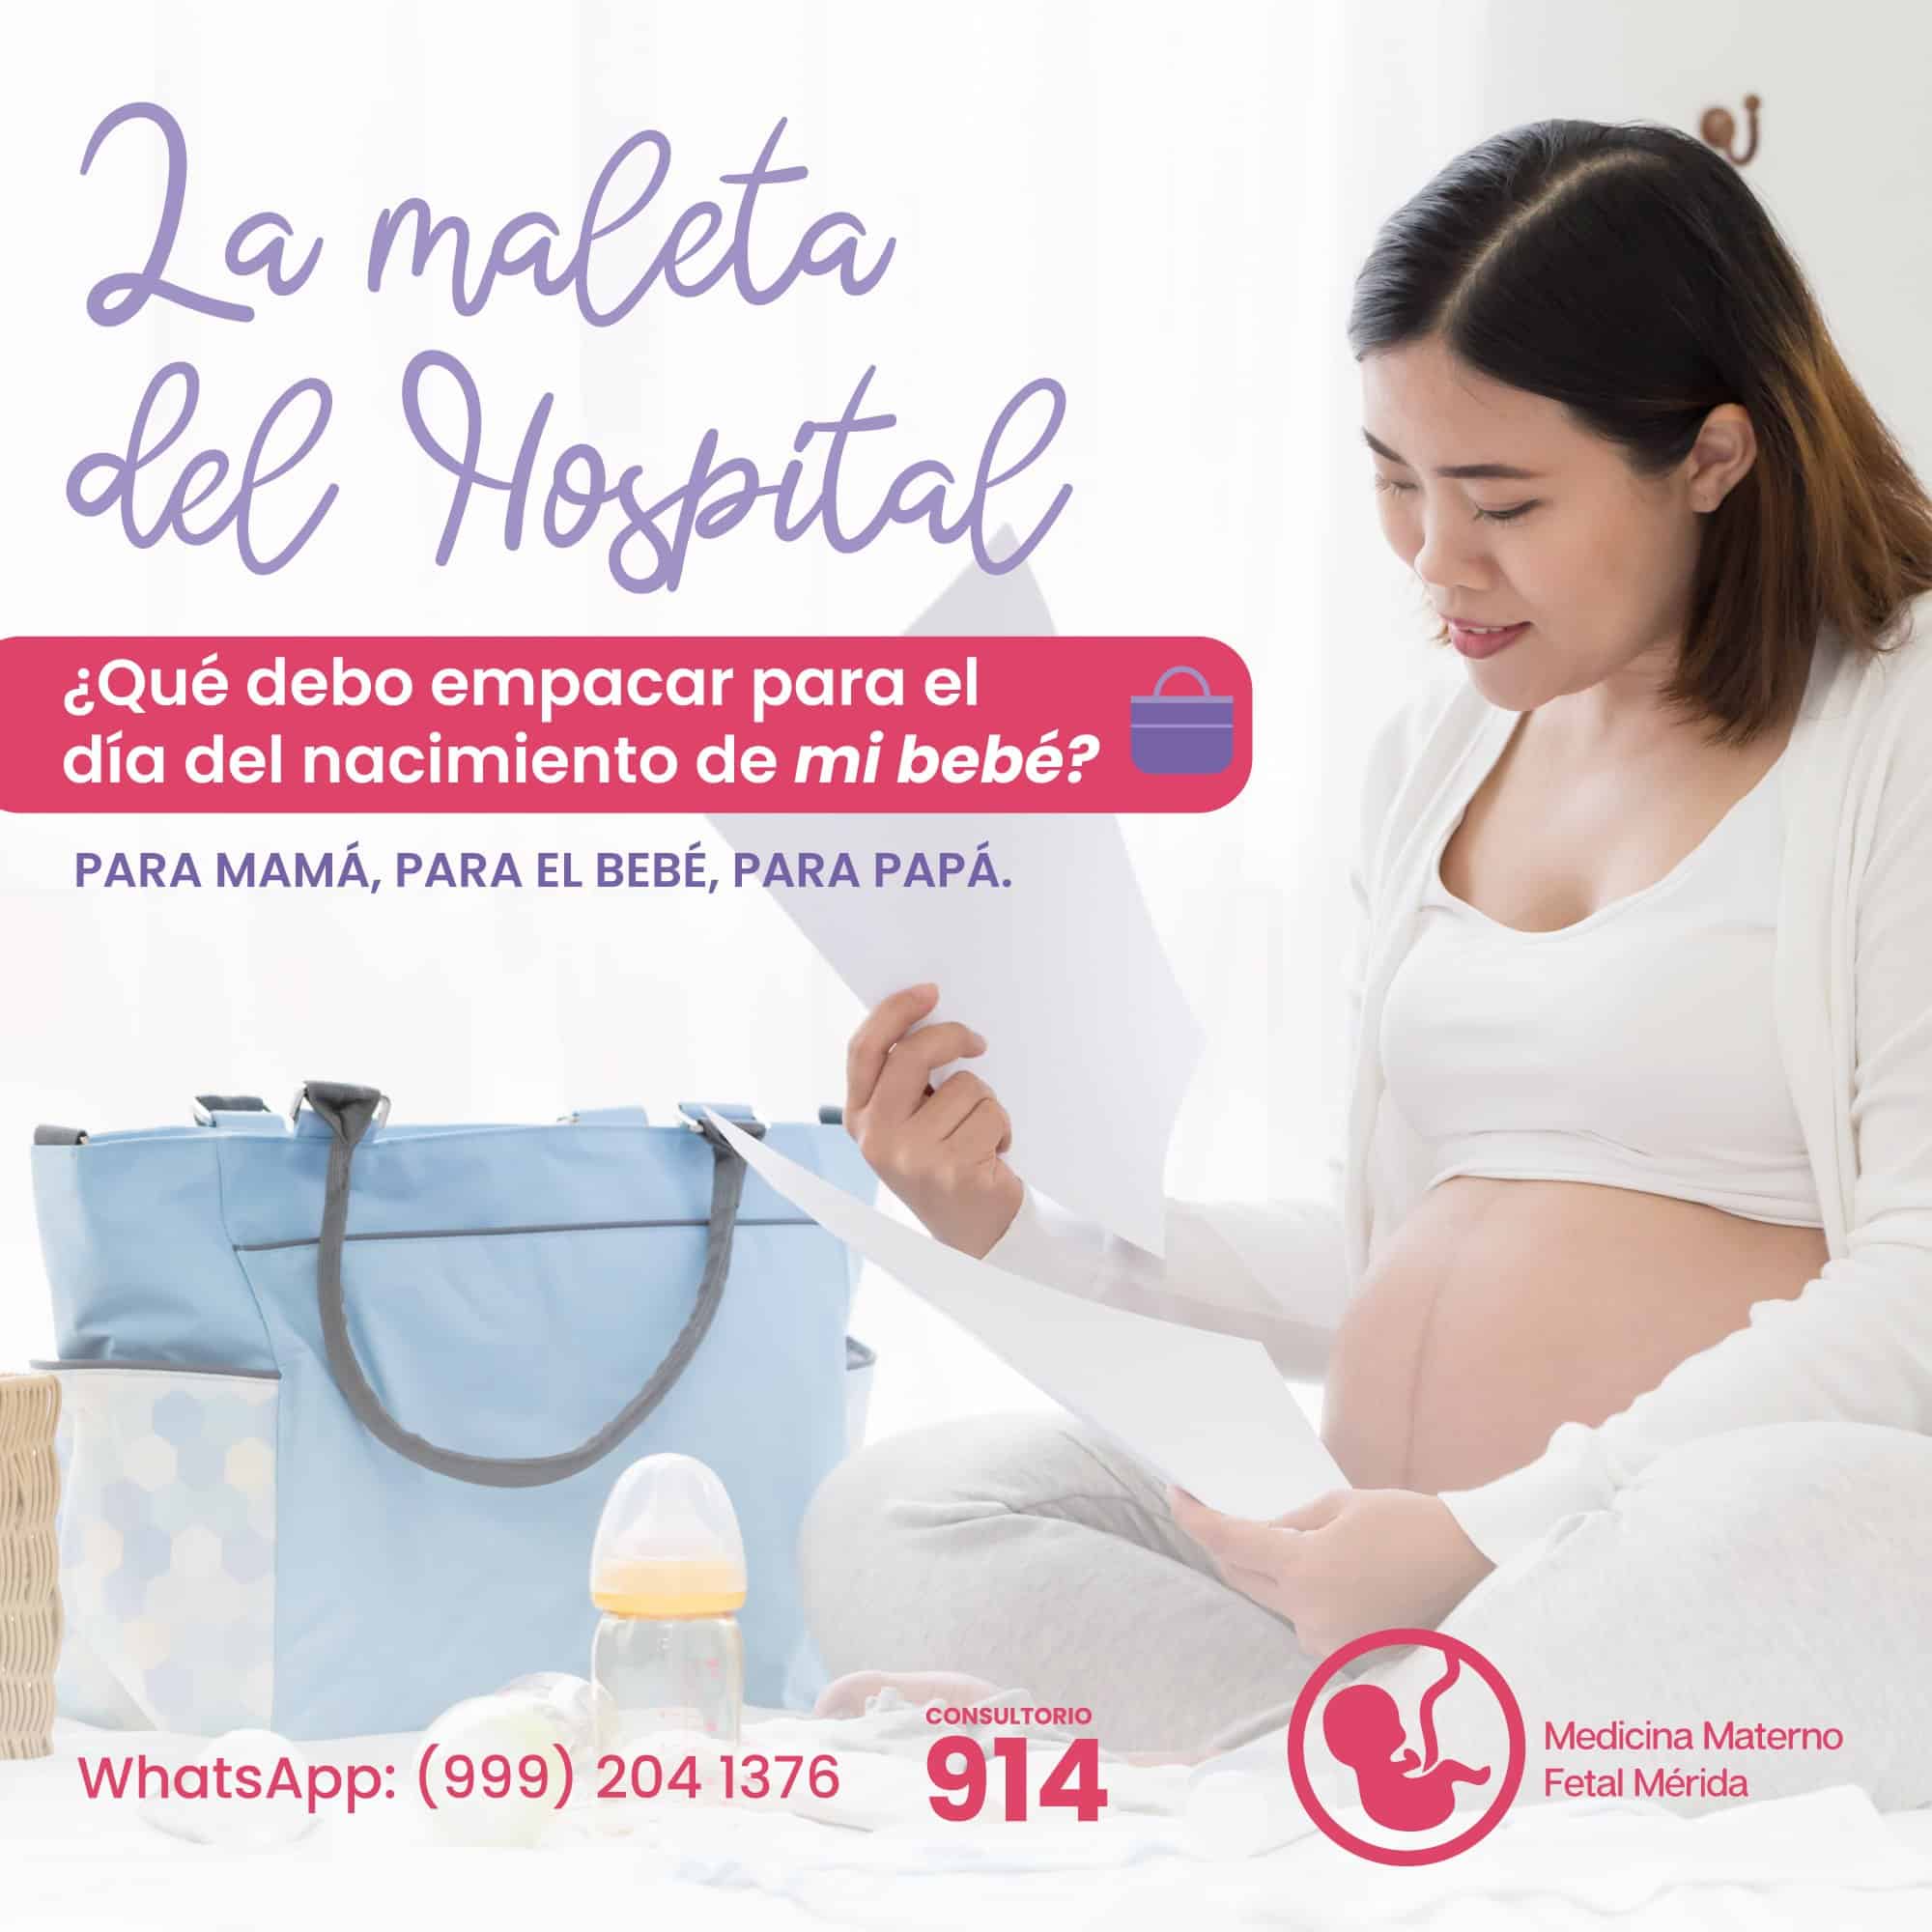 Maleta de Hospital 🏥 para PARTO (Mamá y Bebé) ESENCIALES 